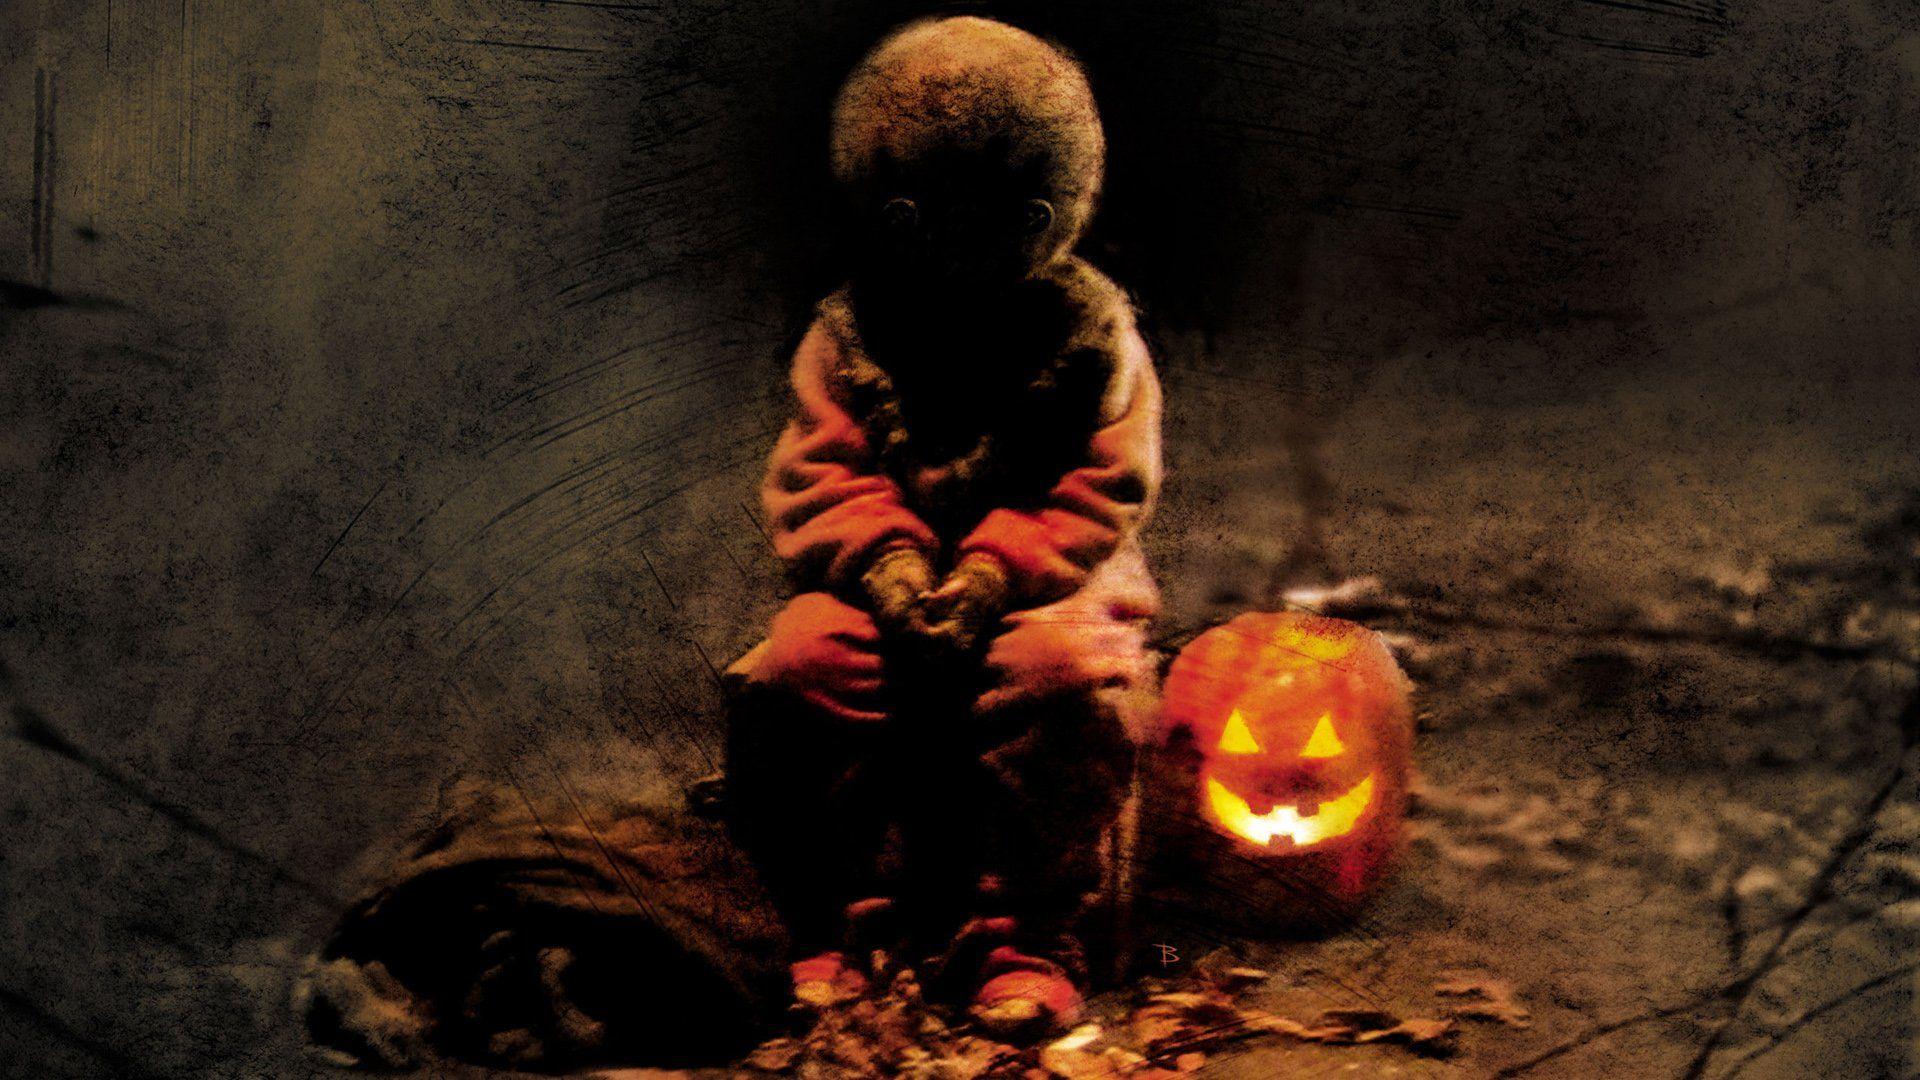 TRICK R TREAT horror thriller dark halloween movie film 23